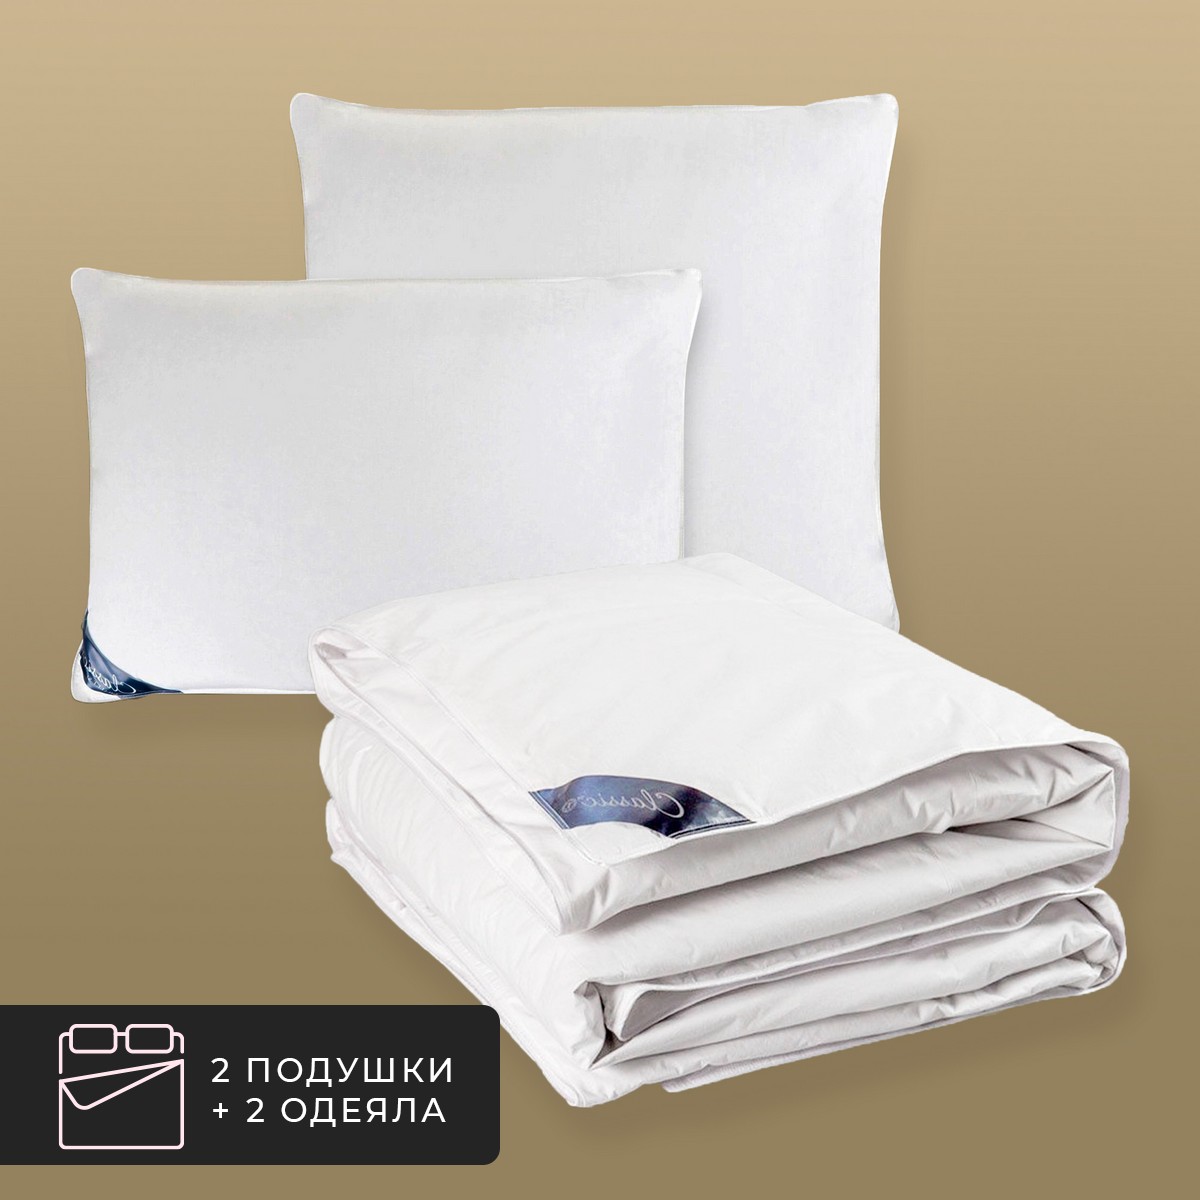 Набор 2 одеяла + 2 подушки Шале, 100% венгерский гусиный пух в хлопковом тике (200х210-2 шт, 50х70-2 шт) CLASSIC BY T